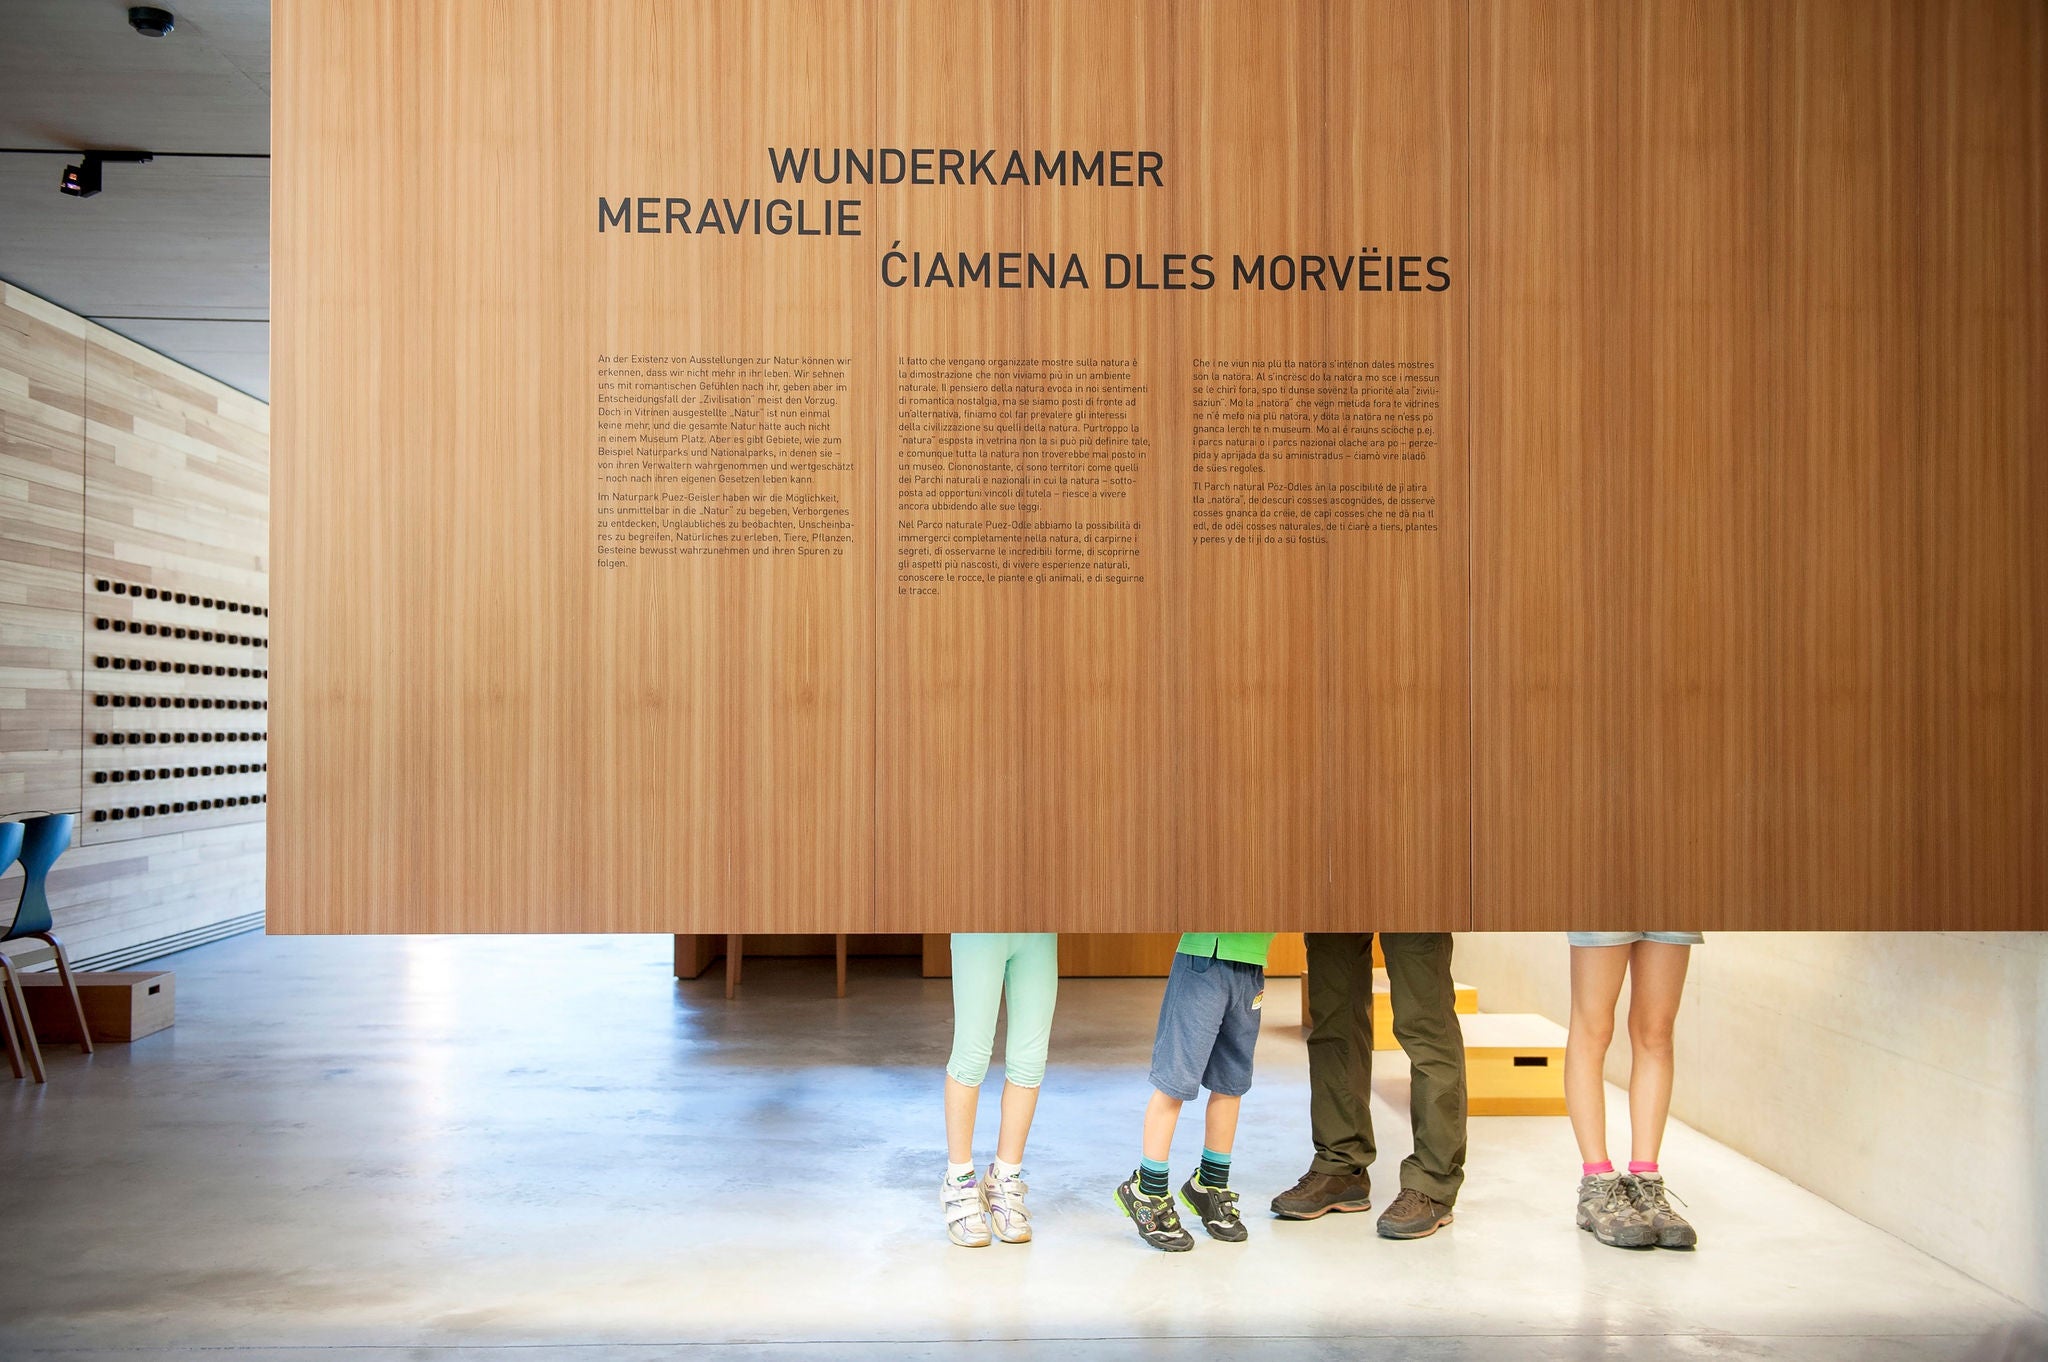 Die Füße von vier Besuchern des Naturparkhauses Villnöss sind hinter einer Ausstellungswand mit allen drei Südtiroler Sprachen Italienisch, Deutsch und Ladinisch.